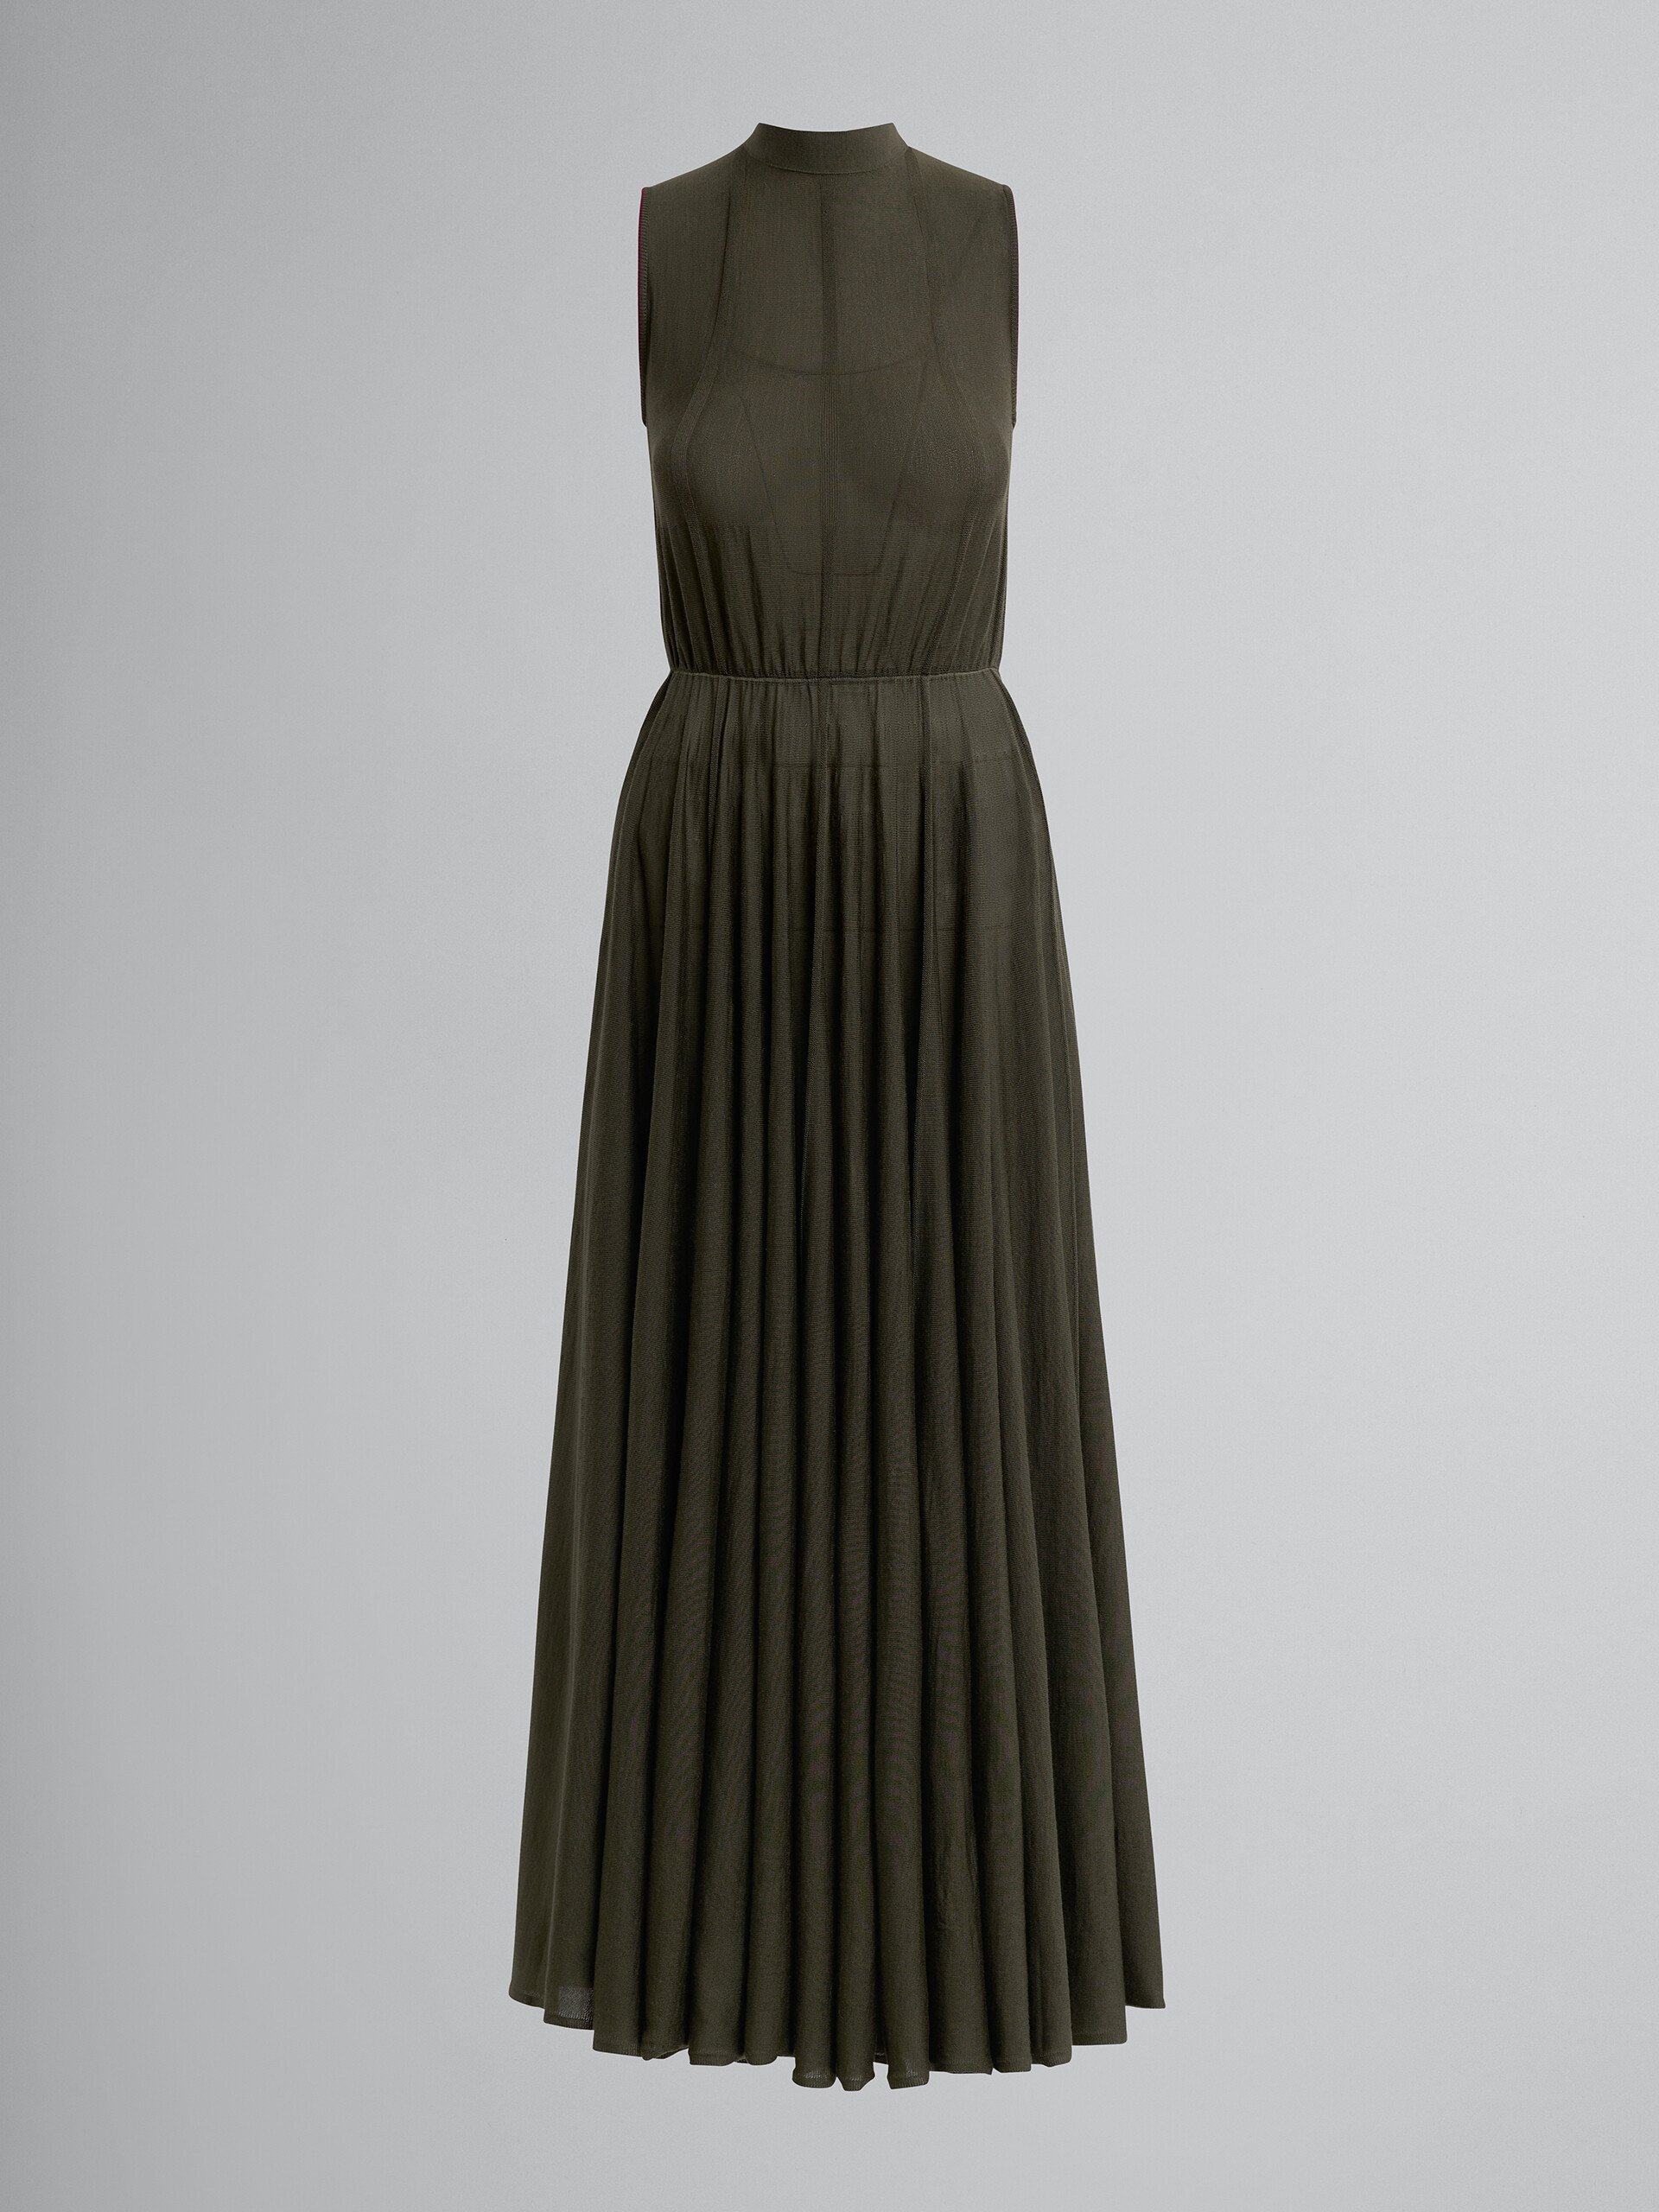 シックなライトウールドレス - ドレス - Image 1